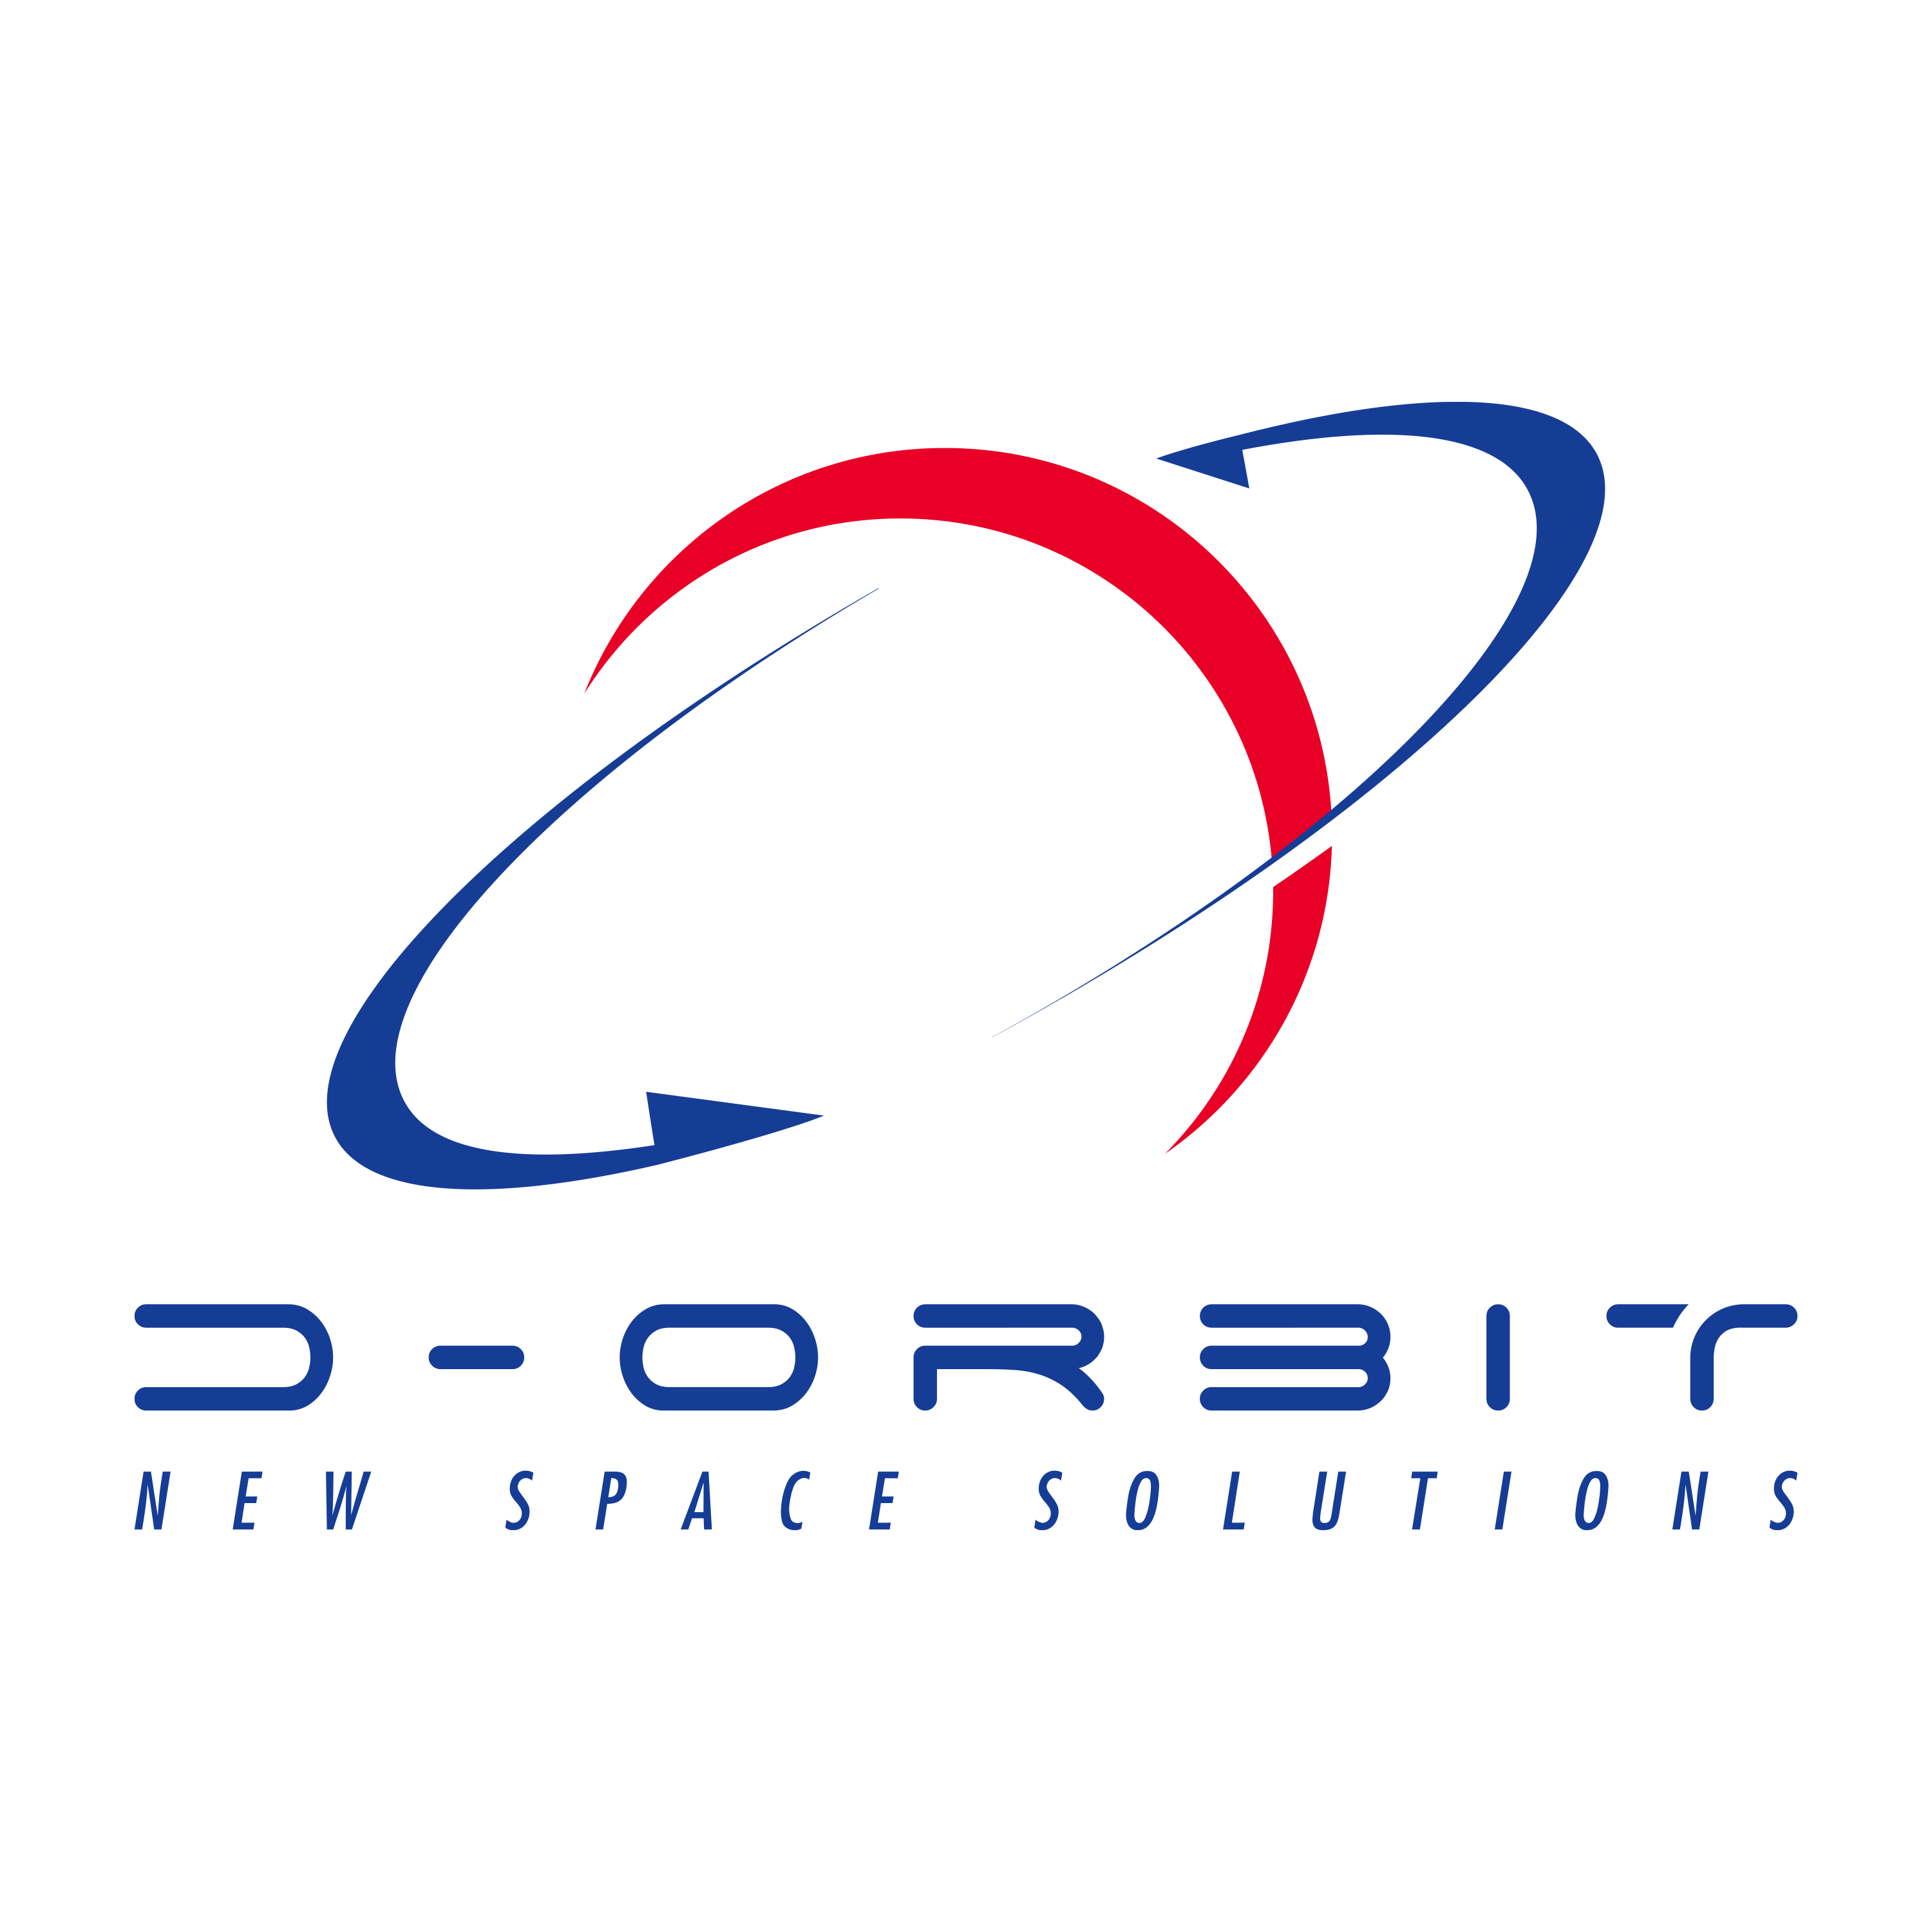 D-orbit